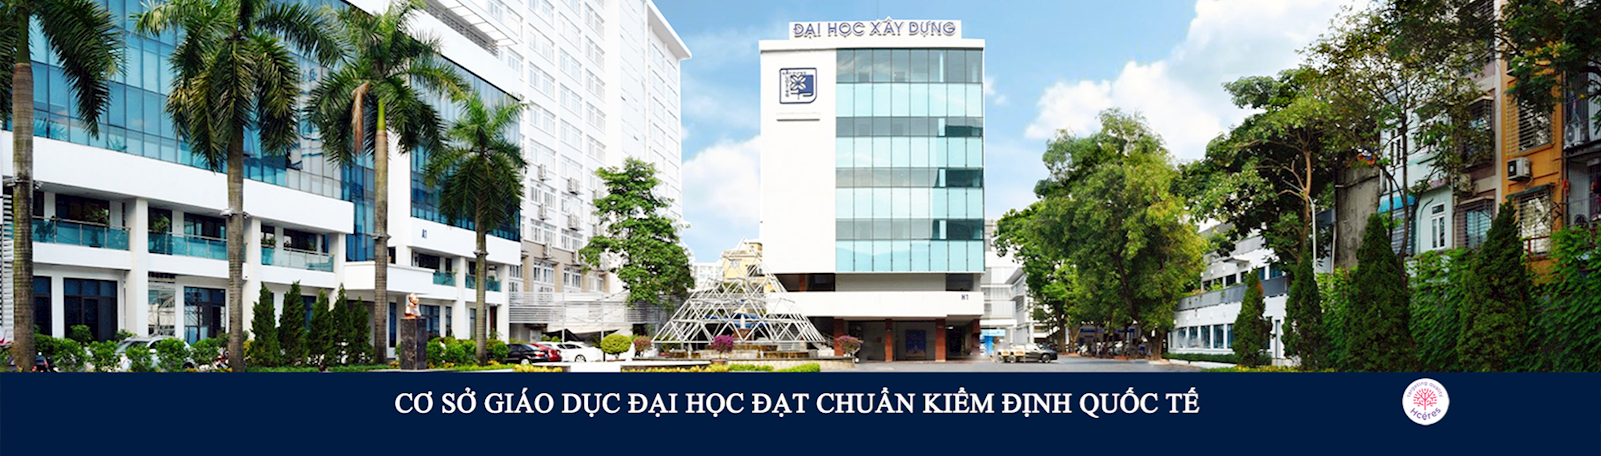 Trường Đại học Xây dựng Hà Nội đón sinh viên trở lại học tập